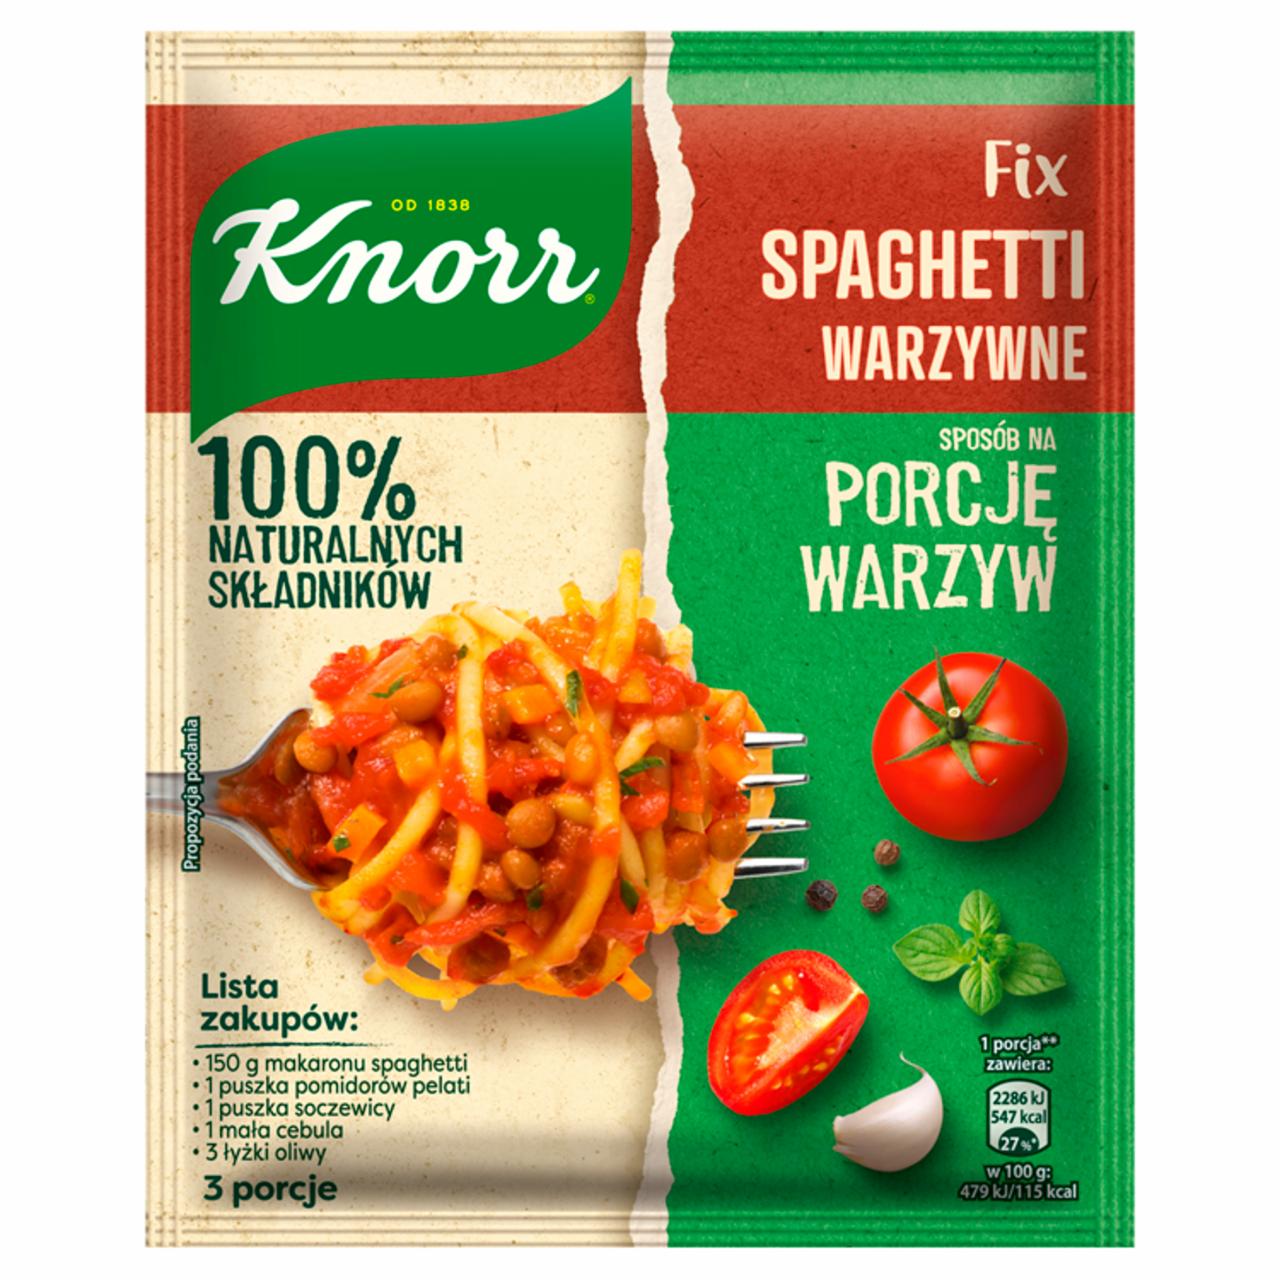 Zdjęcia - Knorr Fix Spaghetti warzywne 43 g